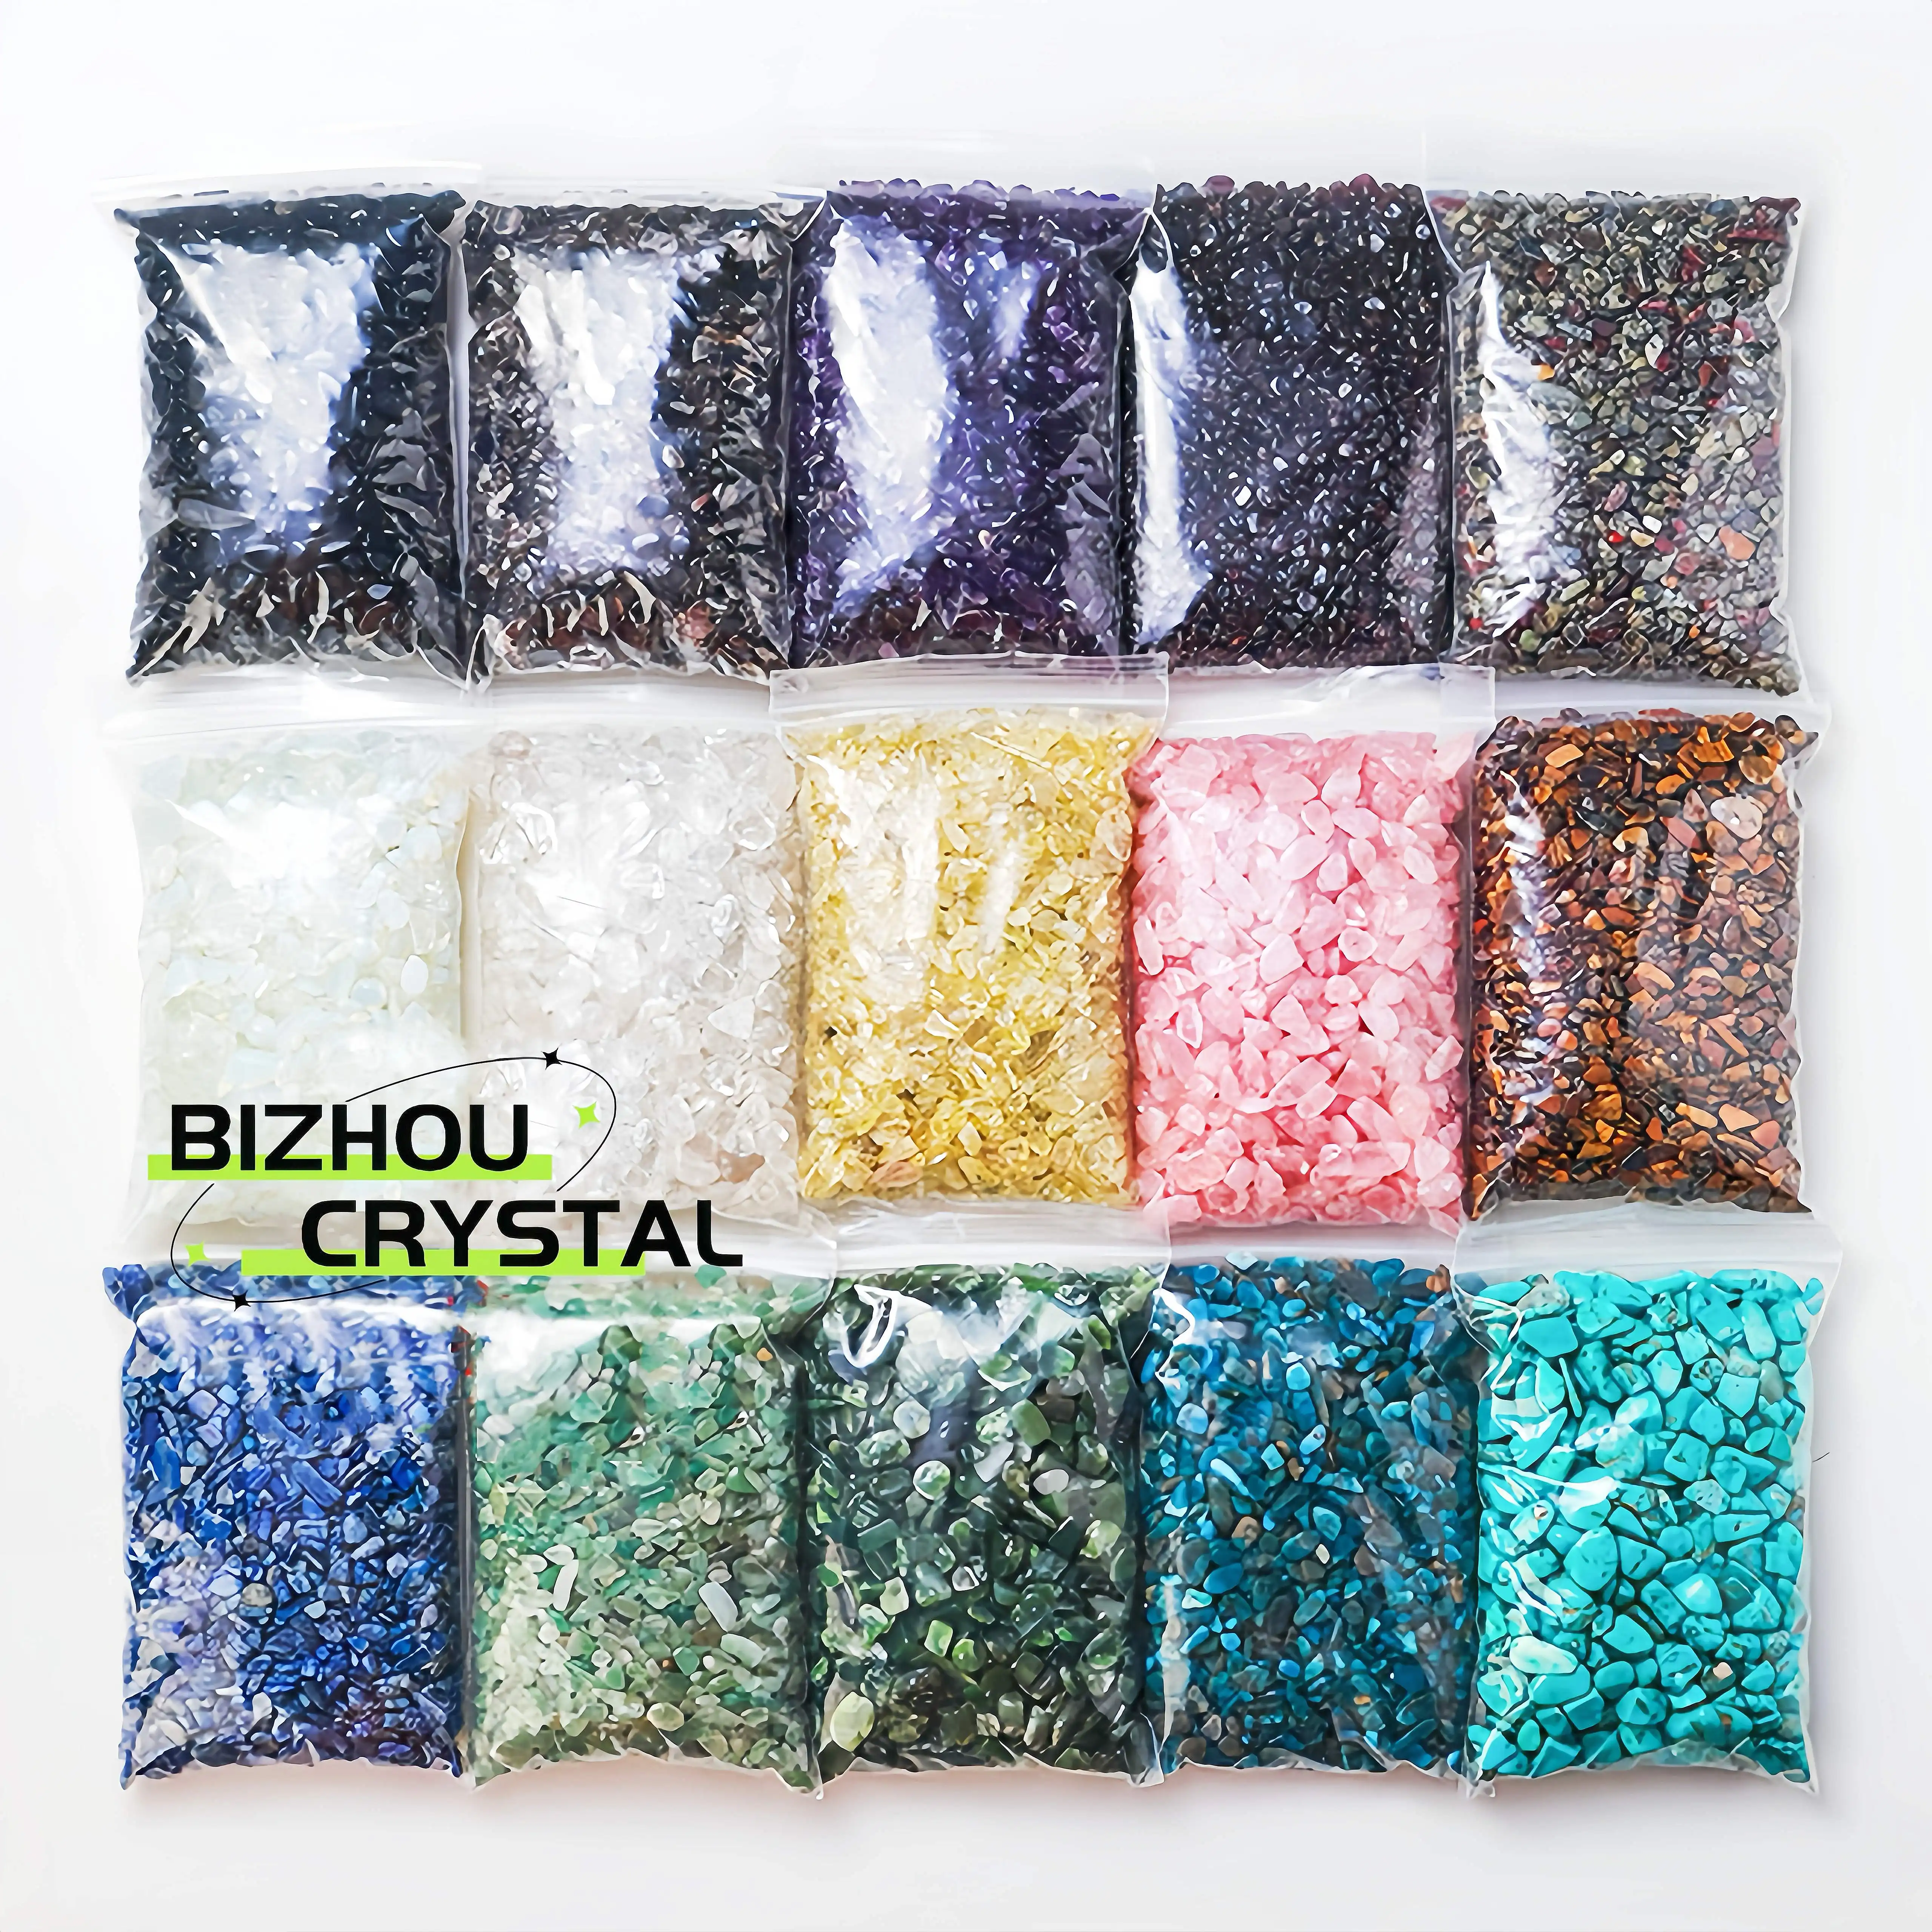 Schlussverkauf 1kg natürliche Kristallchips Ametystenchips Kristall-Kieschips zur Heilung